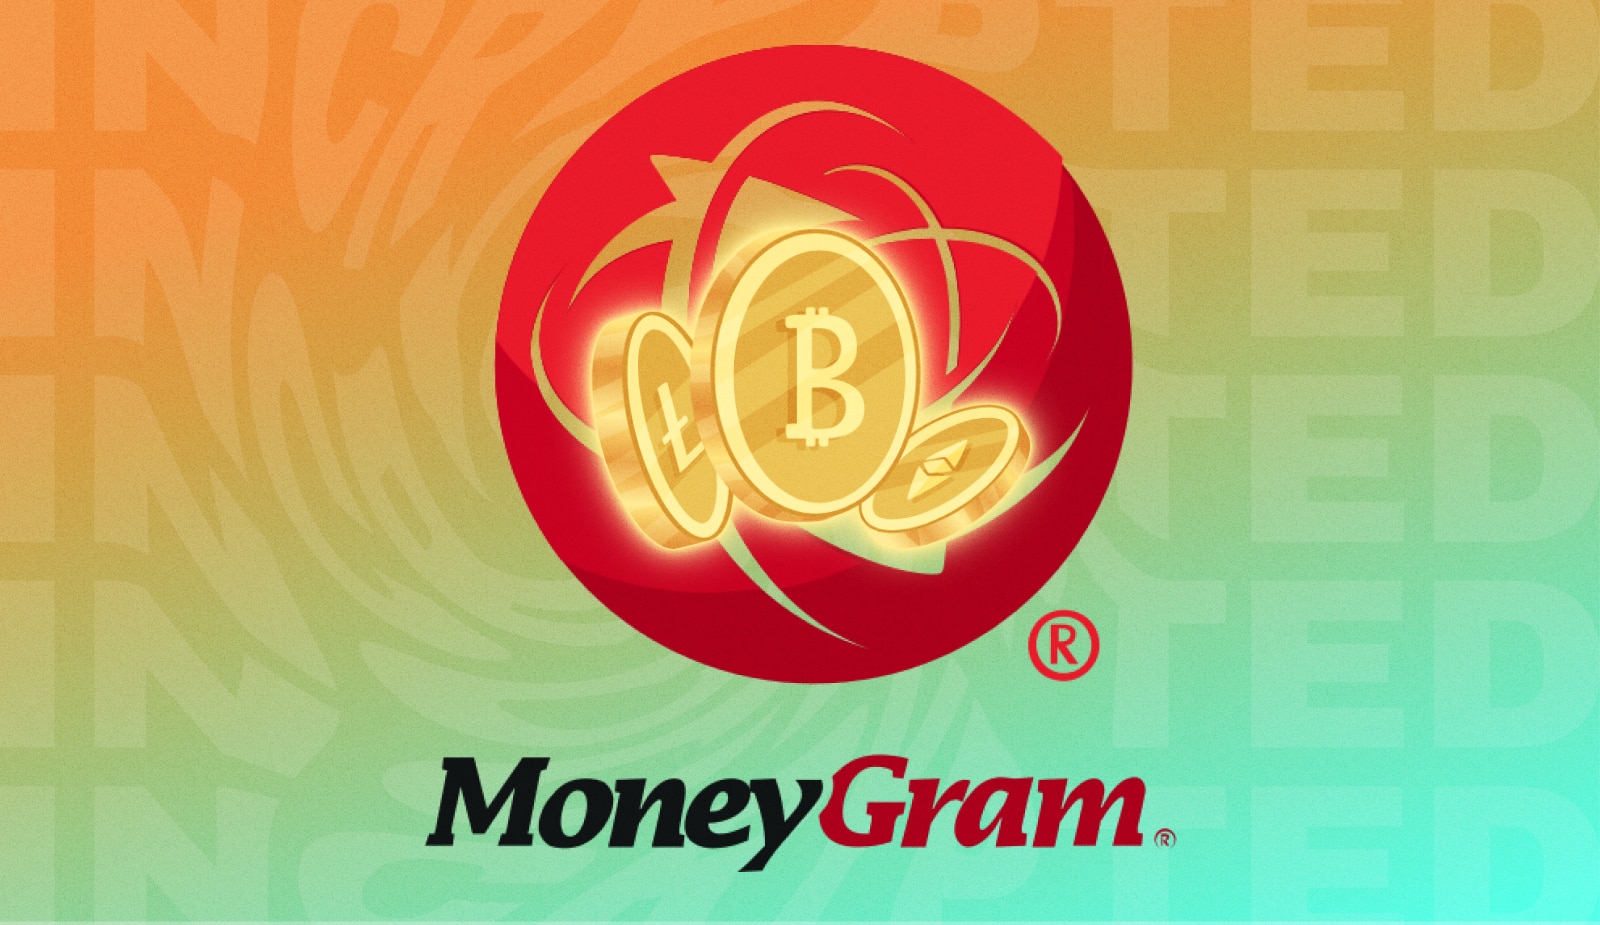 MoneyGram додасть купівлю крипти у своєму мобільному додатку. Головний колаж новини.